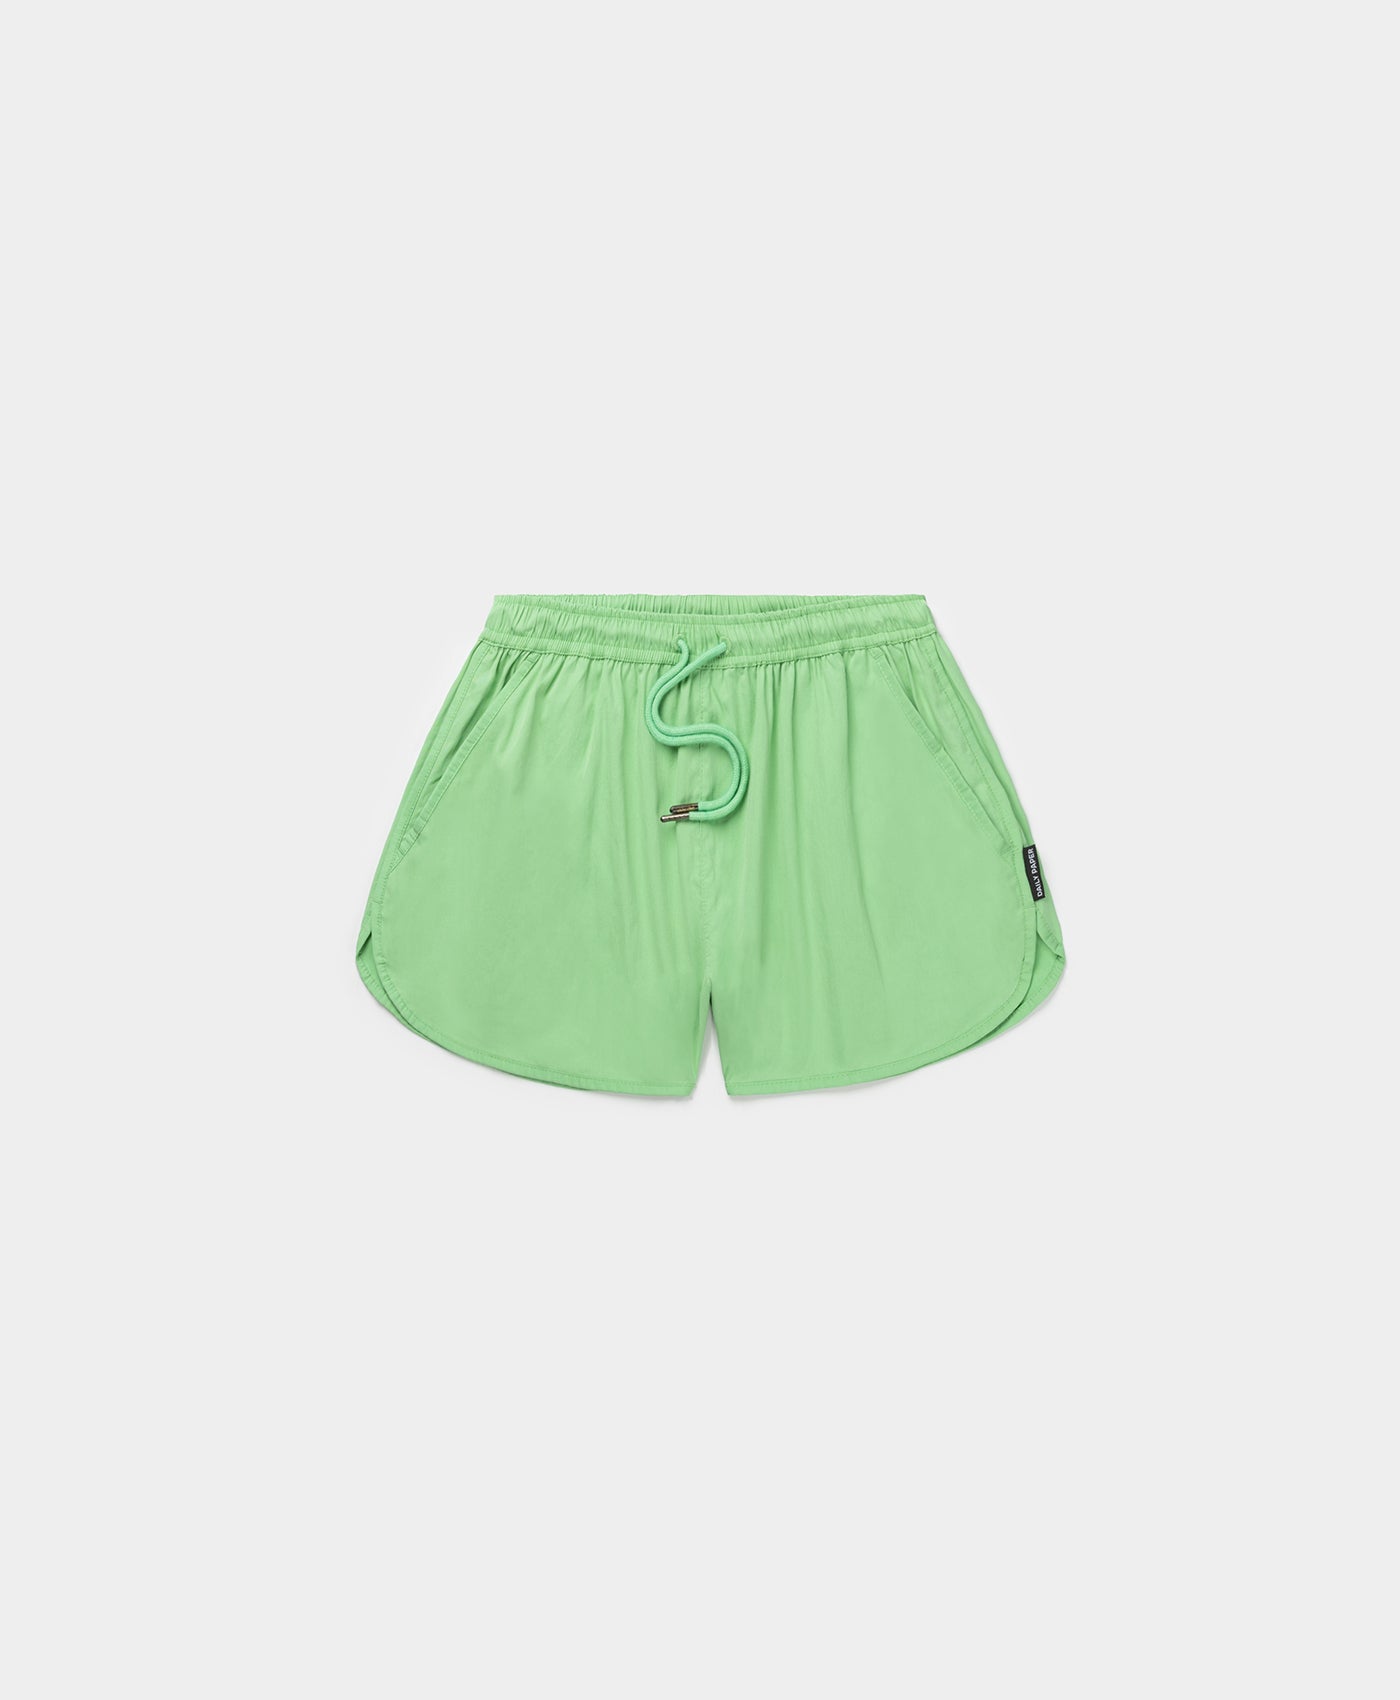 DP - Absinth Green Portia Shorts - Packshot - Front 